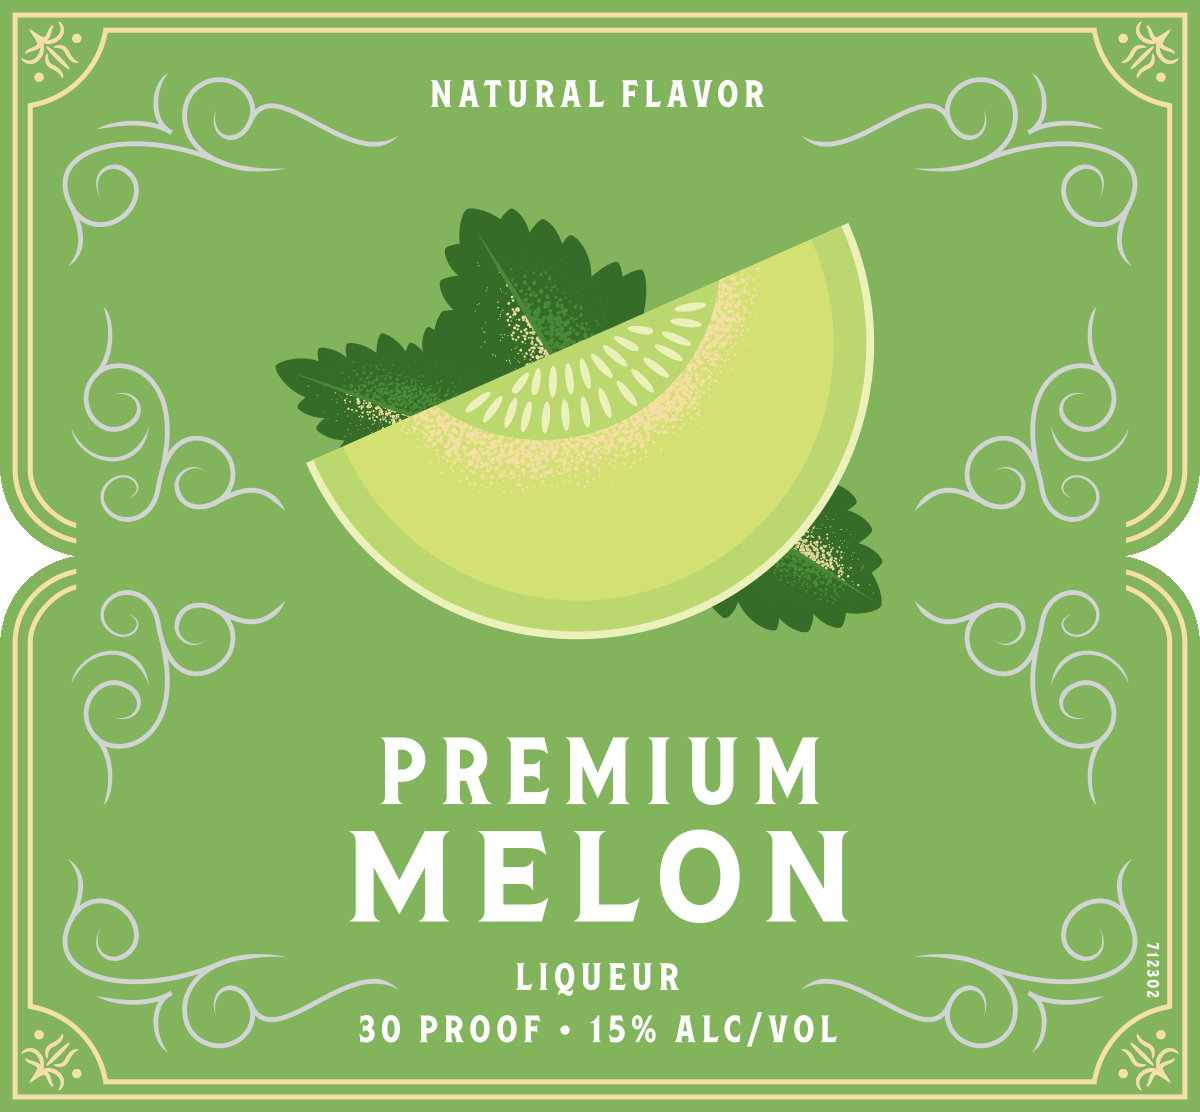 LEROUX® Melon Liqueur